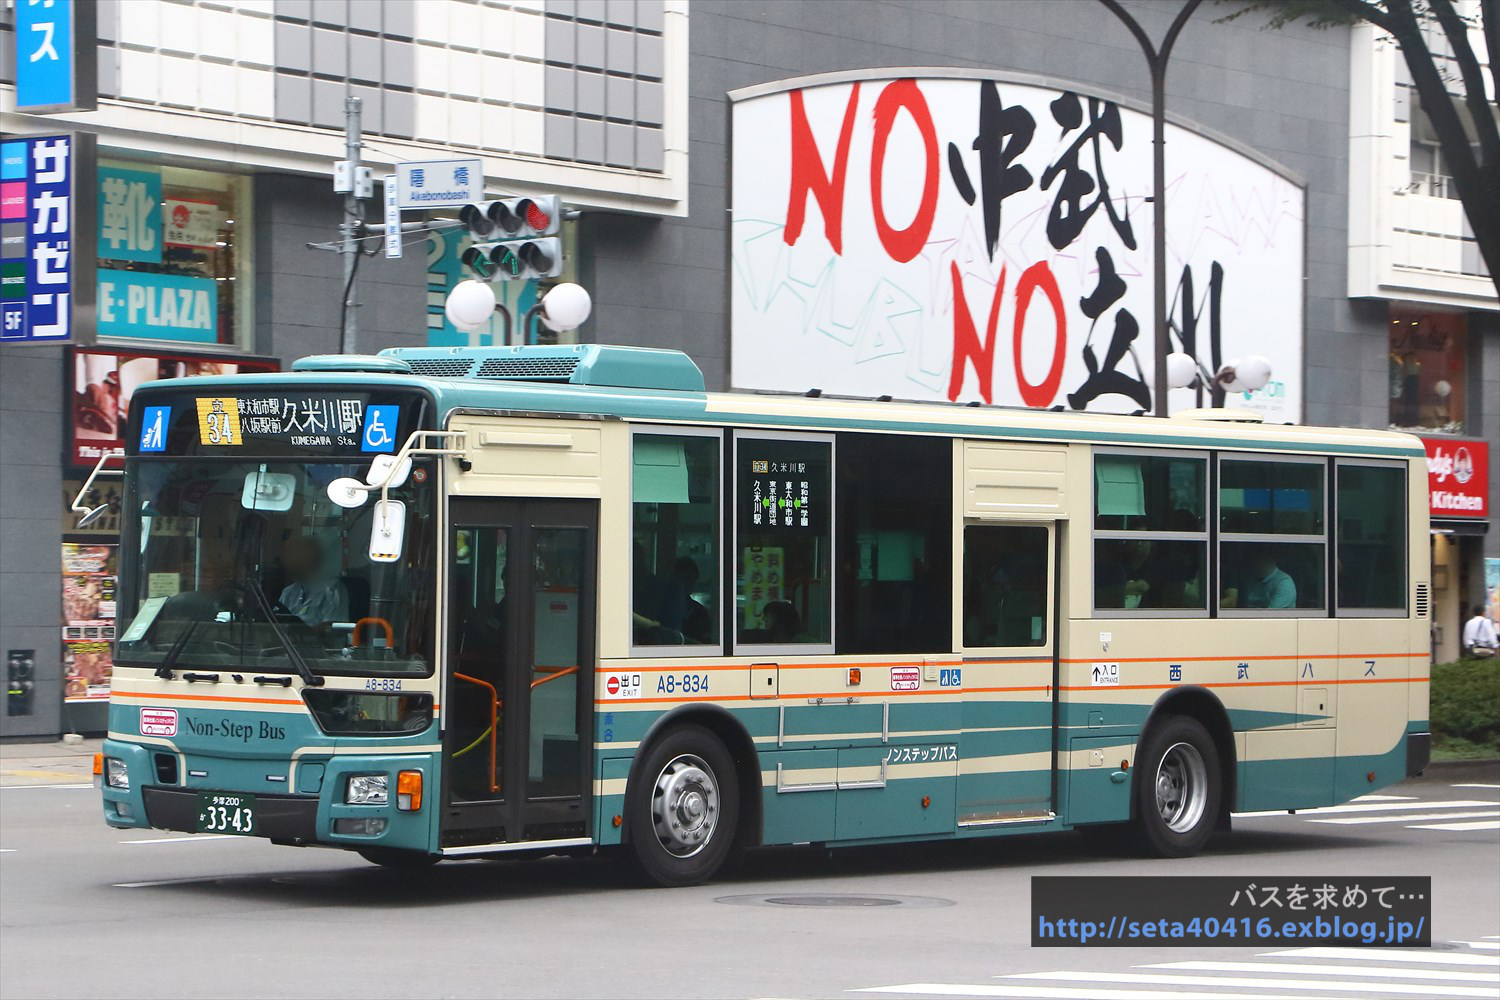 80 三菱ふそう MP38エアロスター (西武バス)